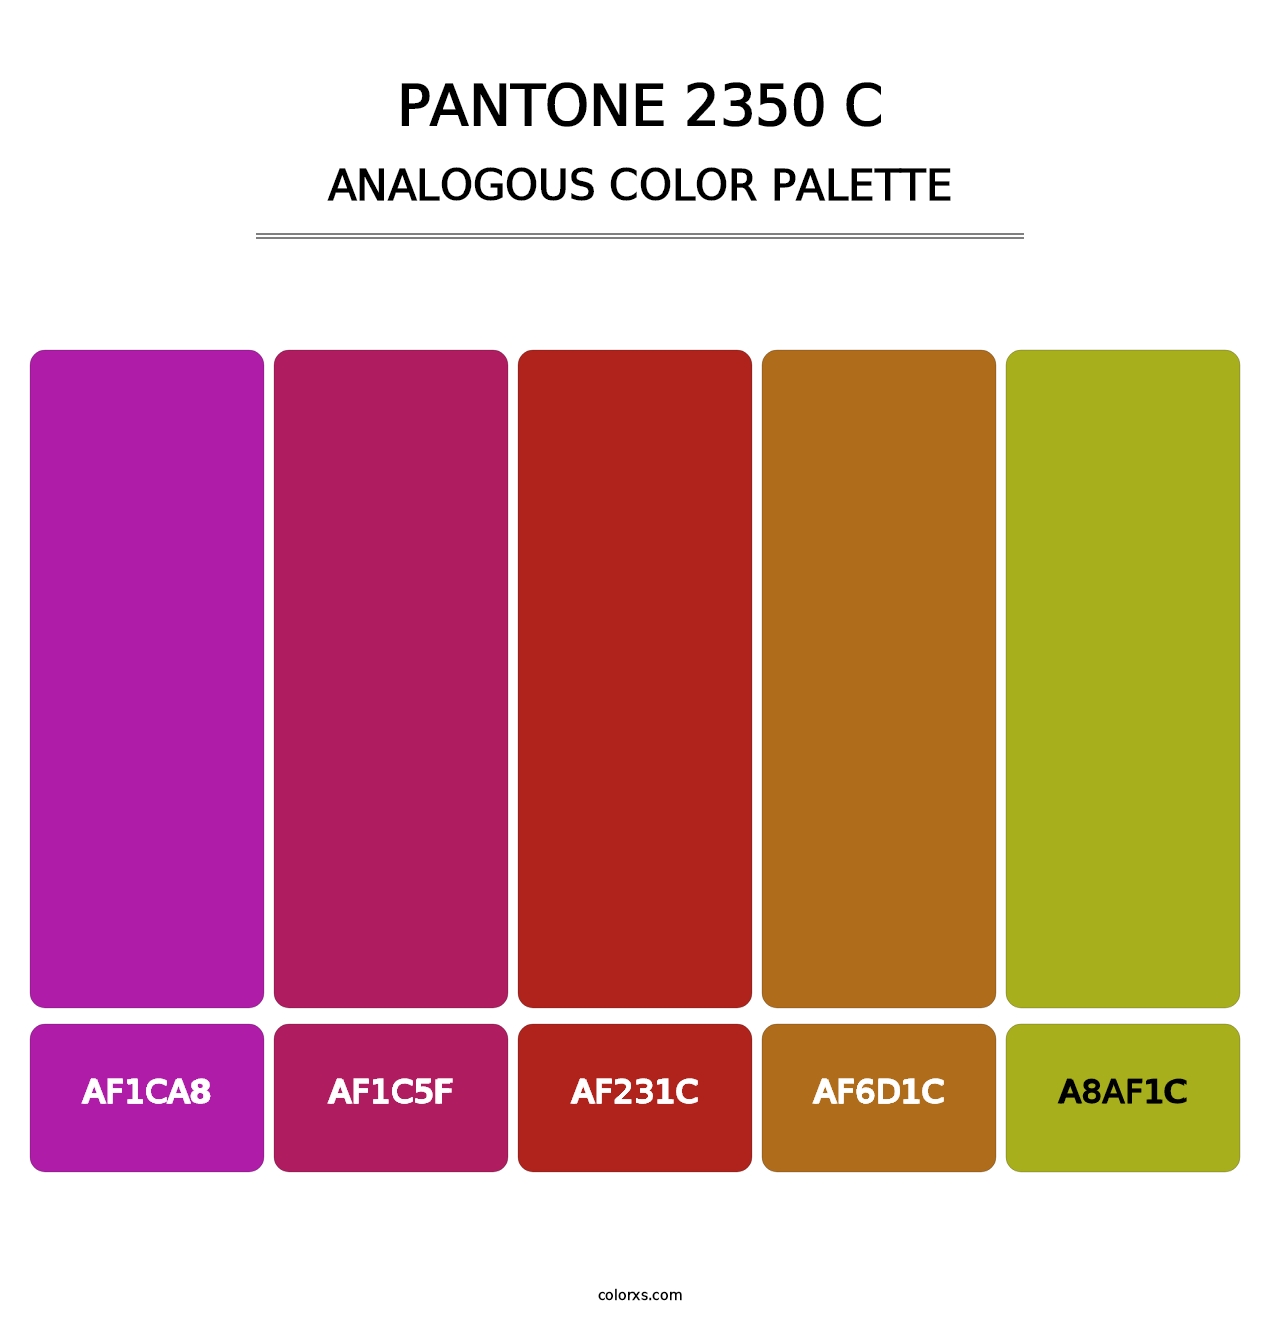 PANTONE 2350 C - Analogous Color Palette